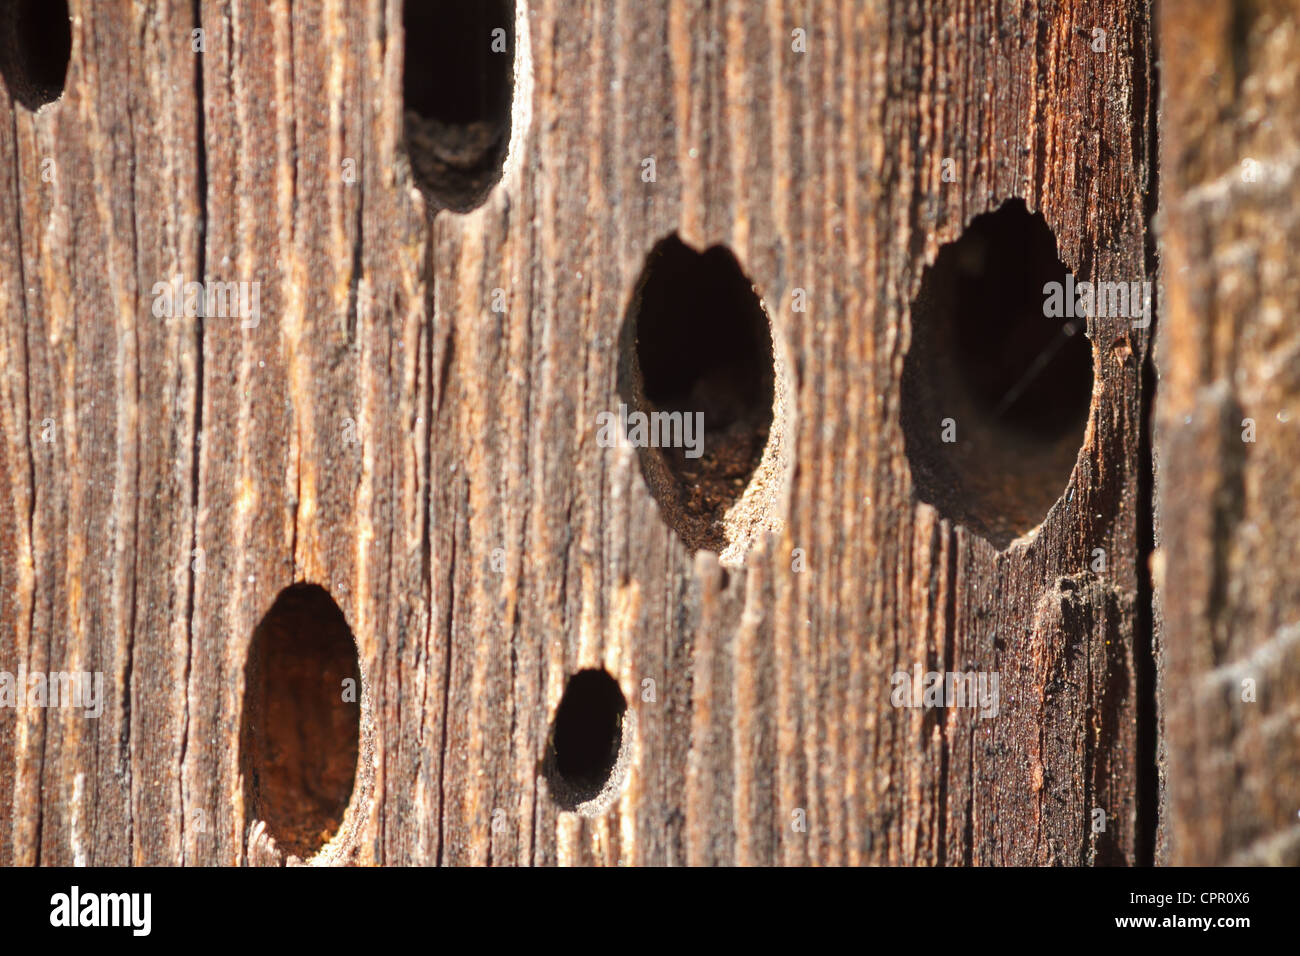 Cómo tapar los agujeros de la carcoma en la madera?